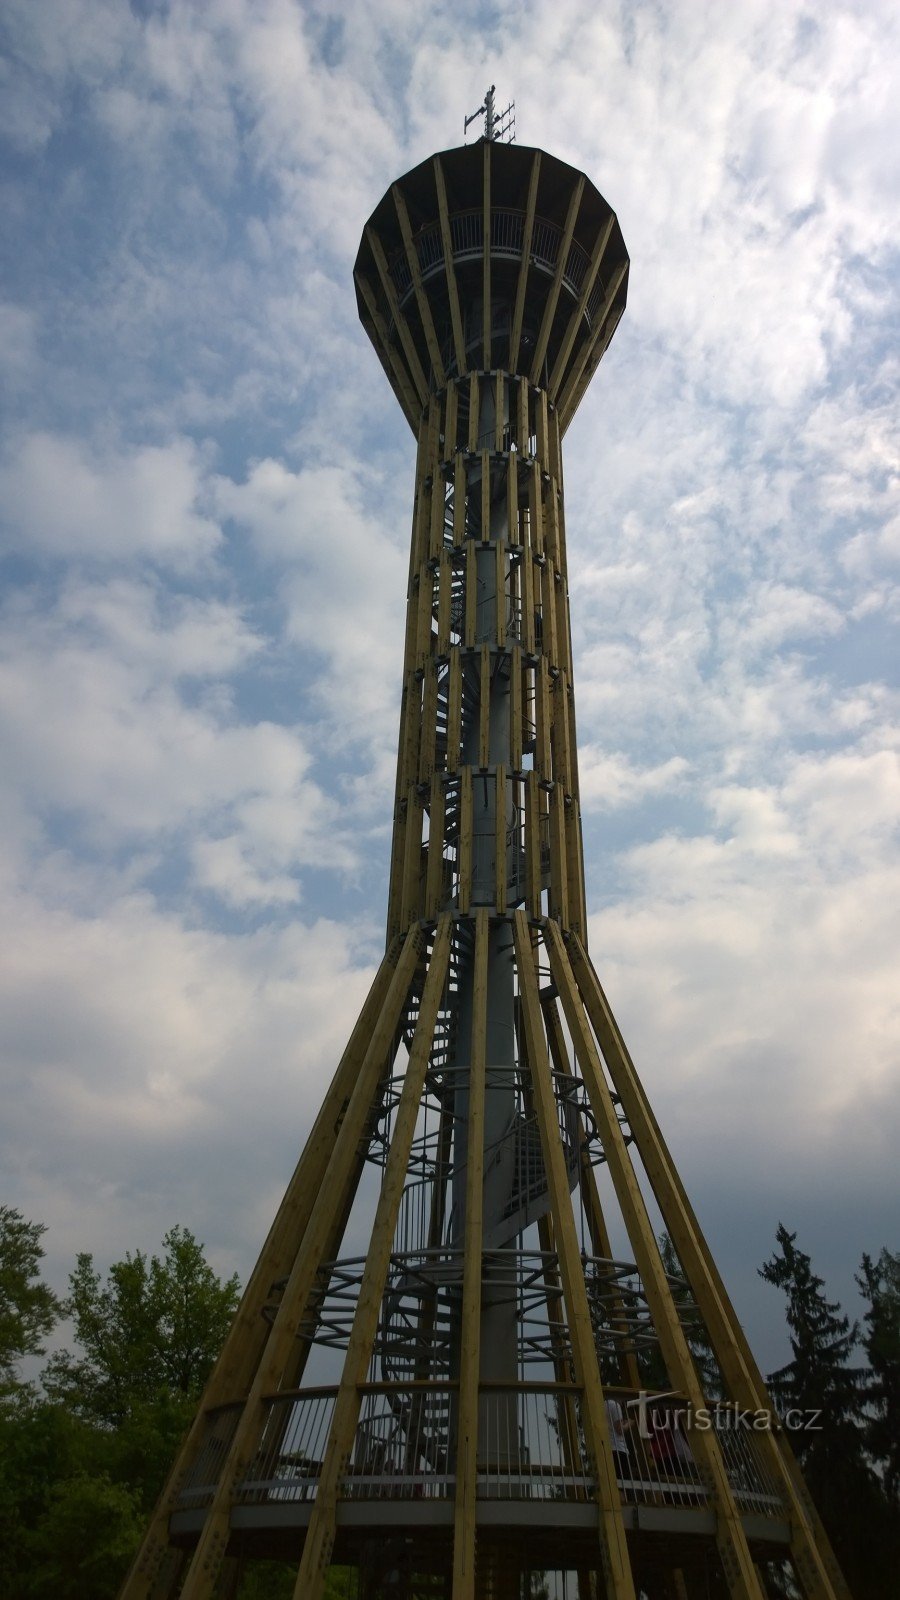 Špulka uitkijktoren bij Lbosín